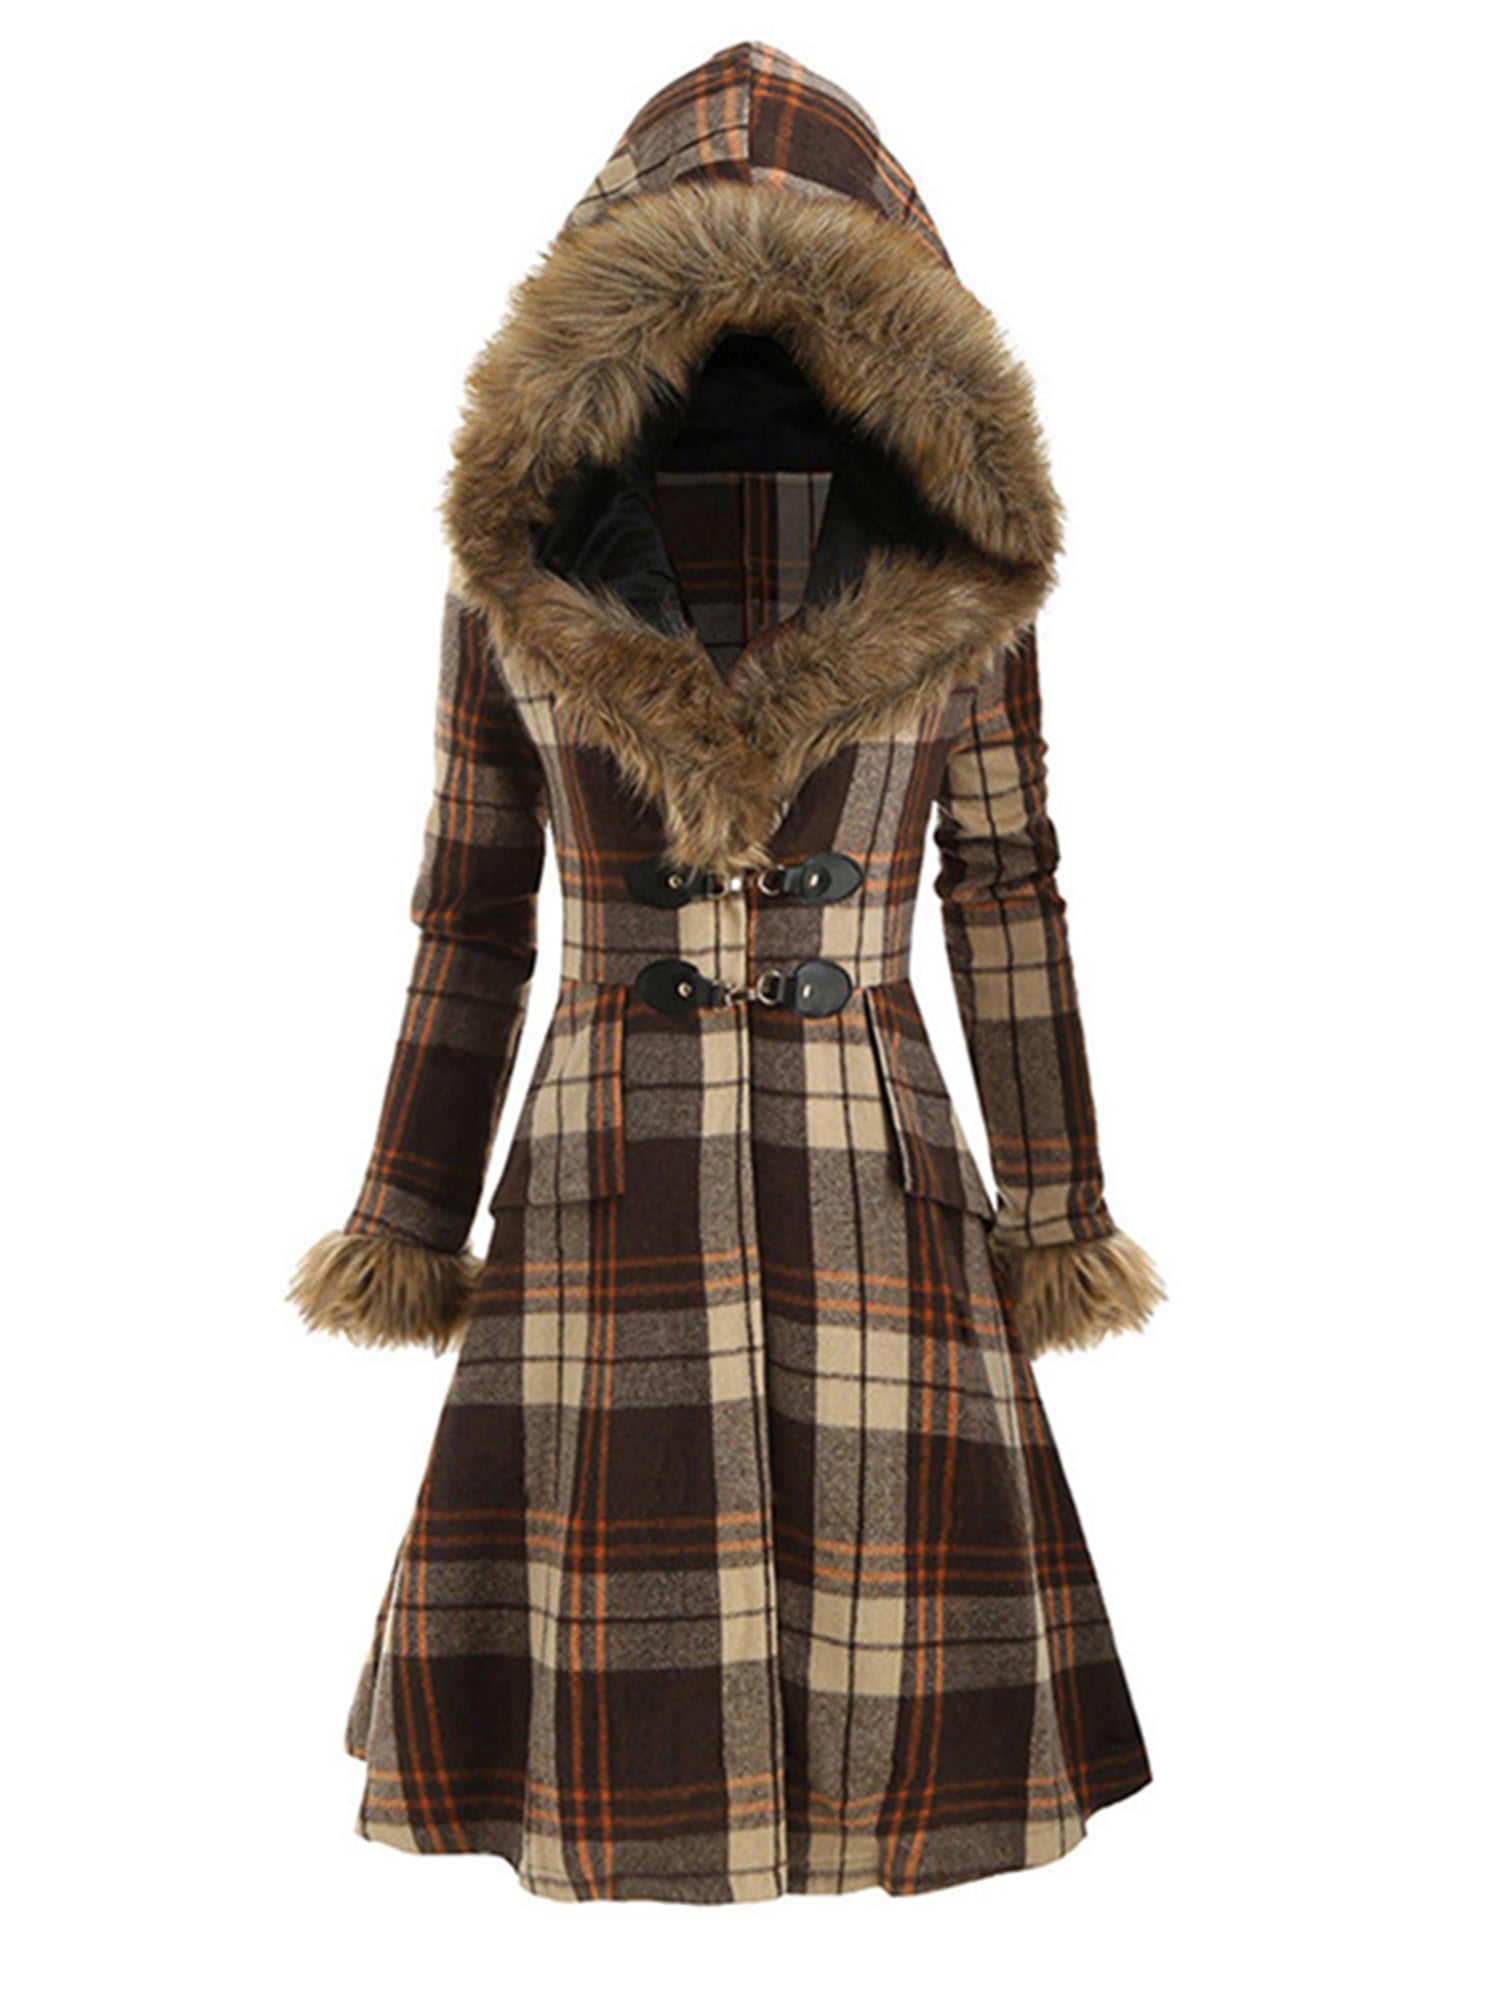 Women's Winter Warm Hooded Coat Long Slim Faux Fur Parka Jacket Overcoat Outwear